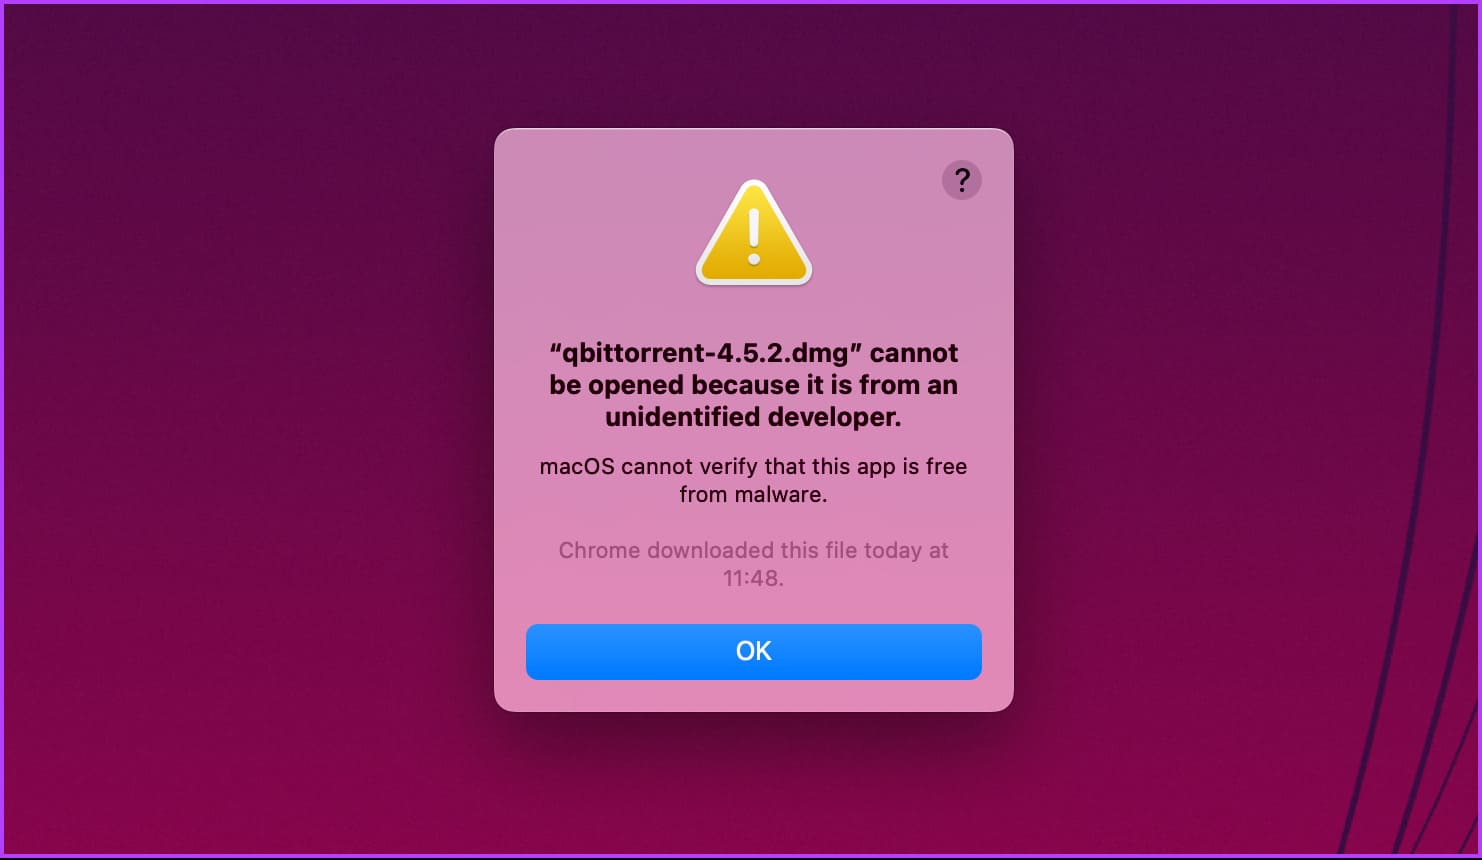 4 إصلاحات لـ "يتعذر على macOS التحقق من خلو هذا التطبيق من البرامج الضارة" - %categories